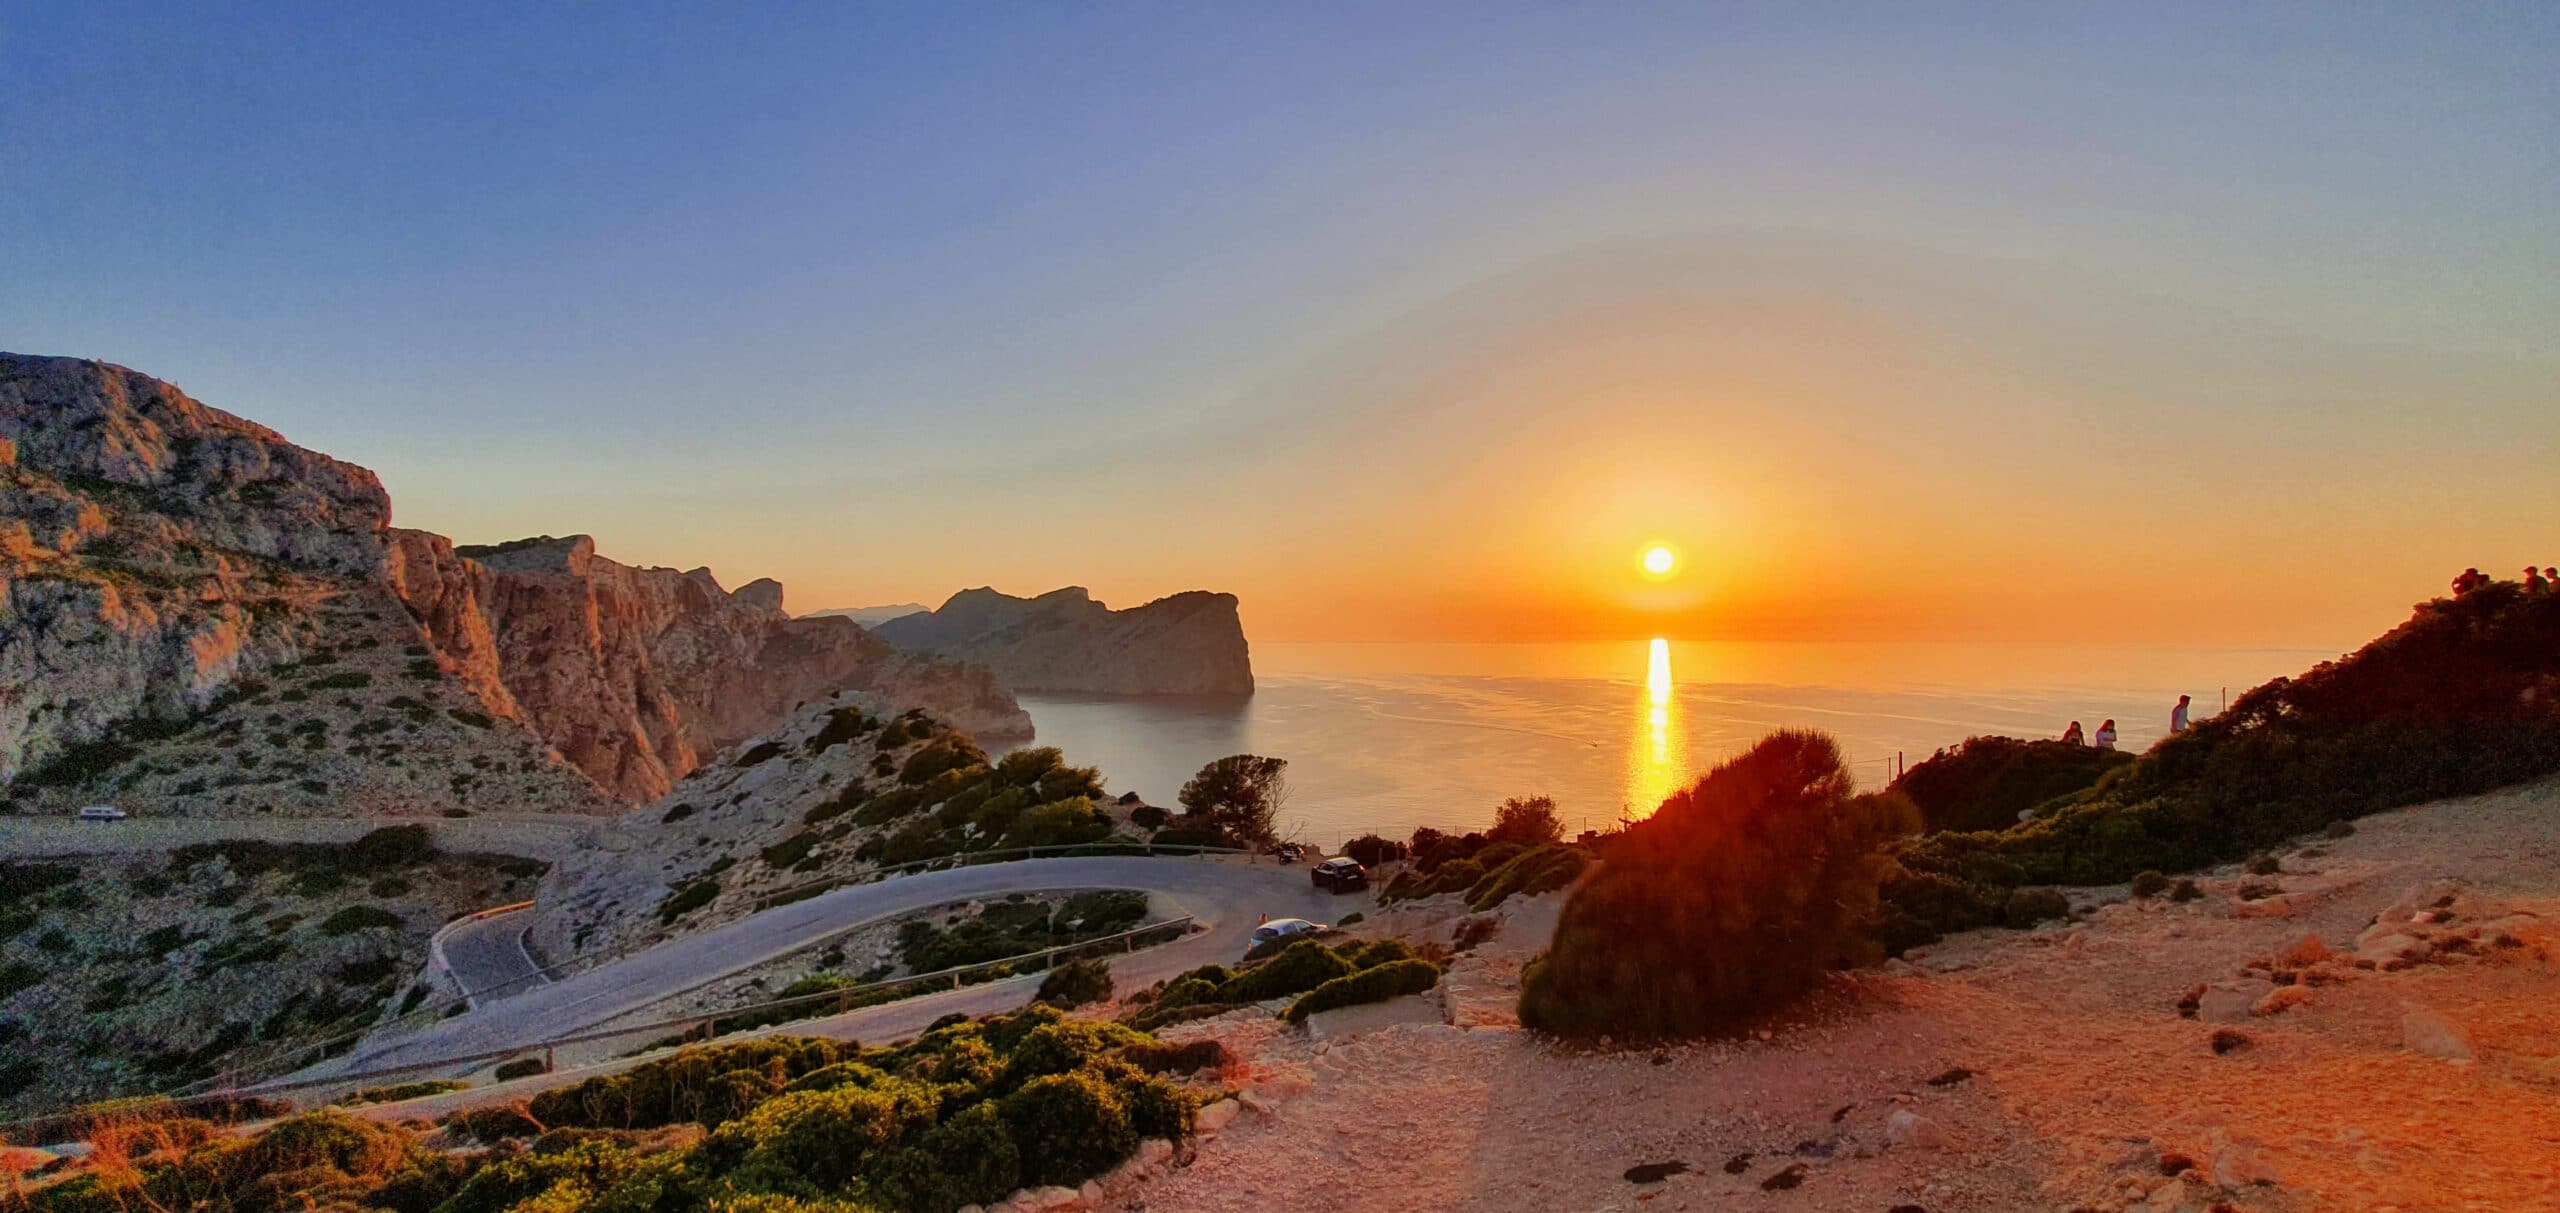 Qué ver en Mallorca? Puesta de sol desde el Faro de Formentor